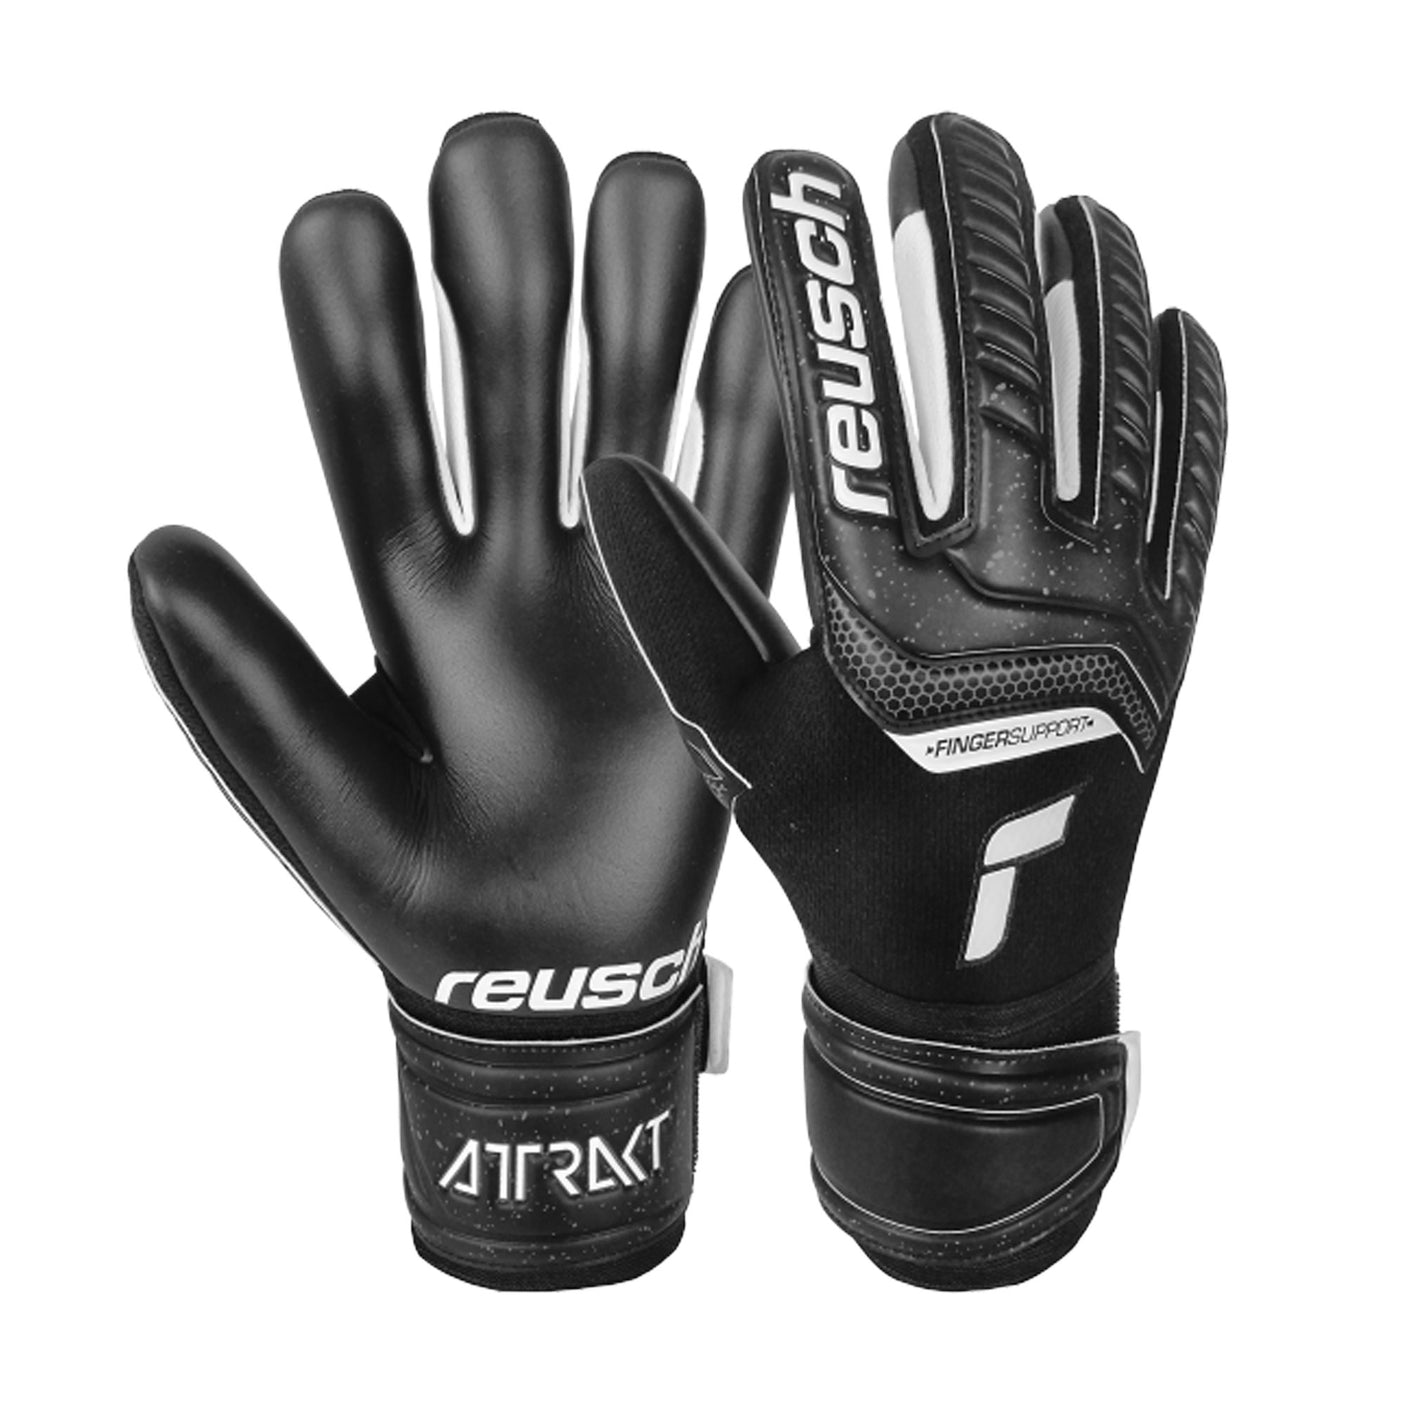 Reusch Men's Goalkeeper Attrakt Infinity Finger Support Gloves Black/White Both